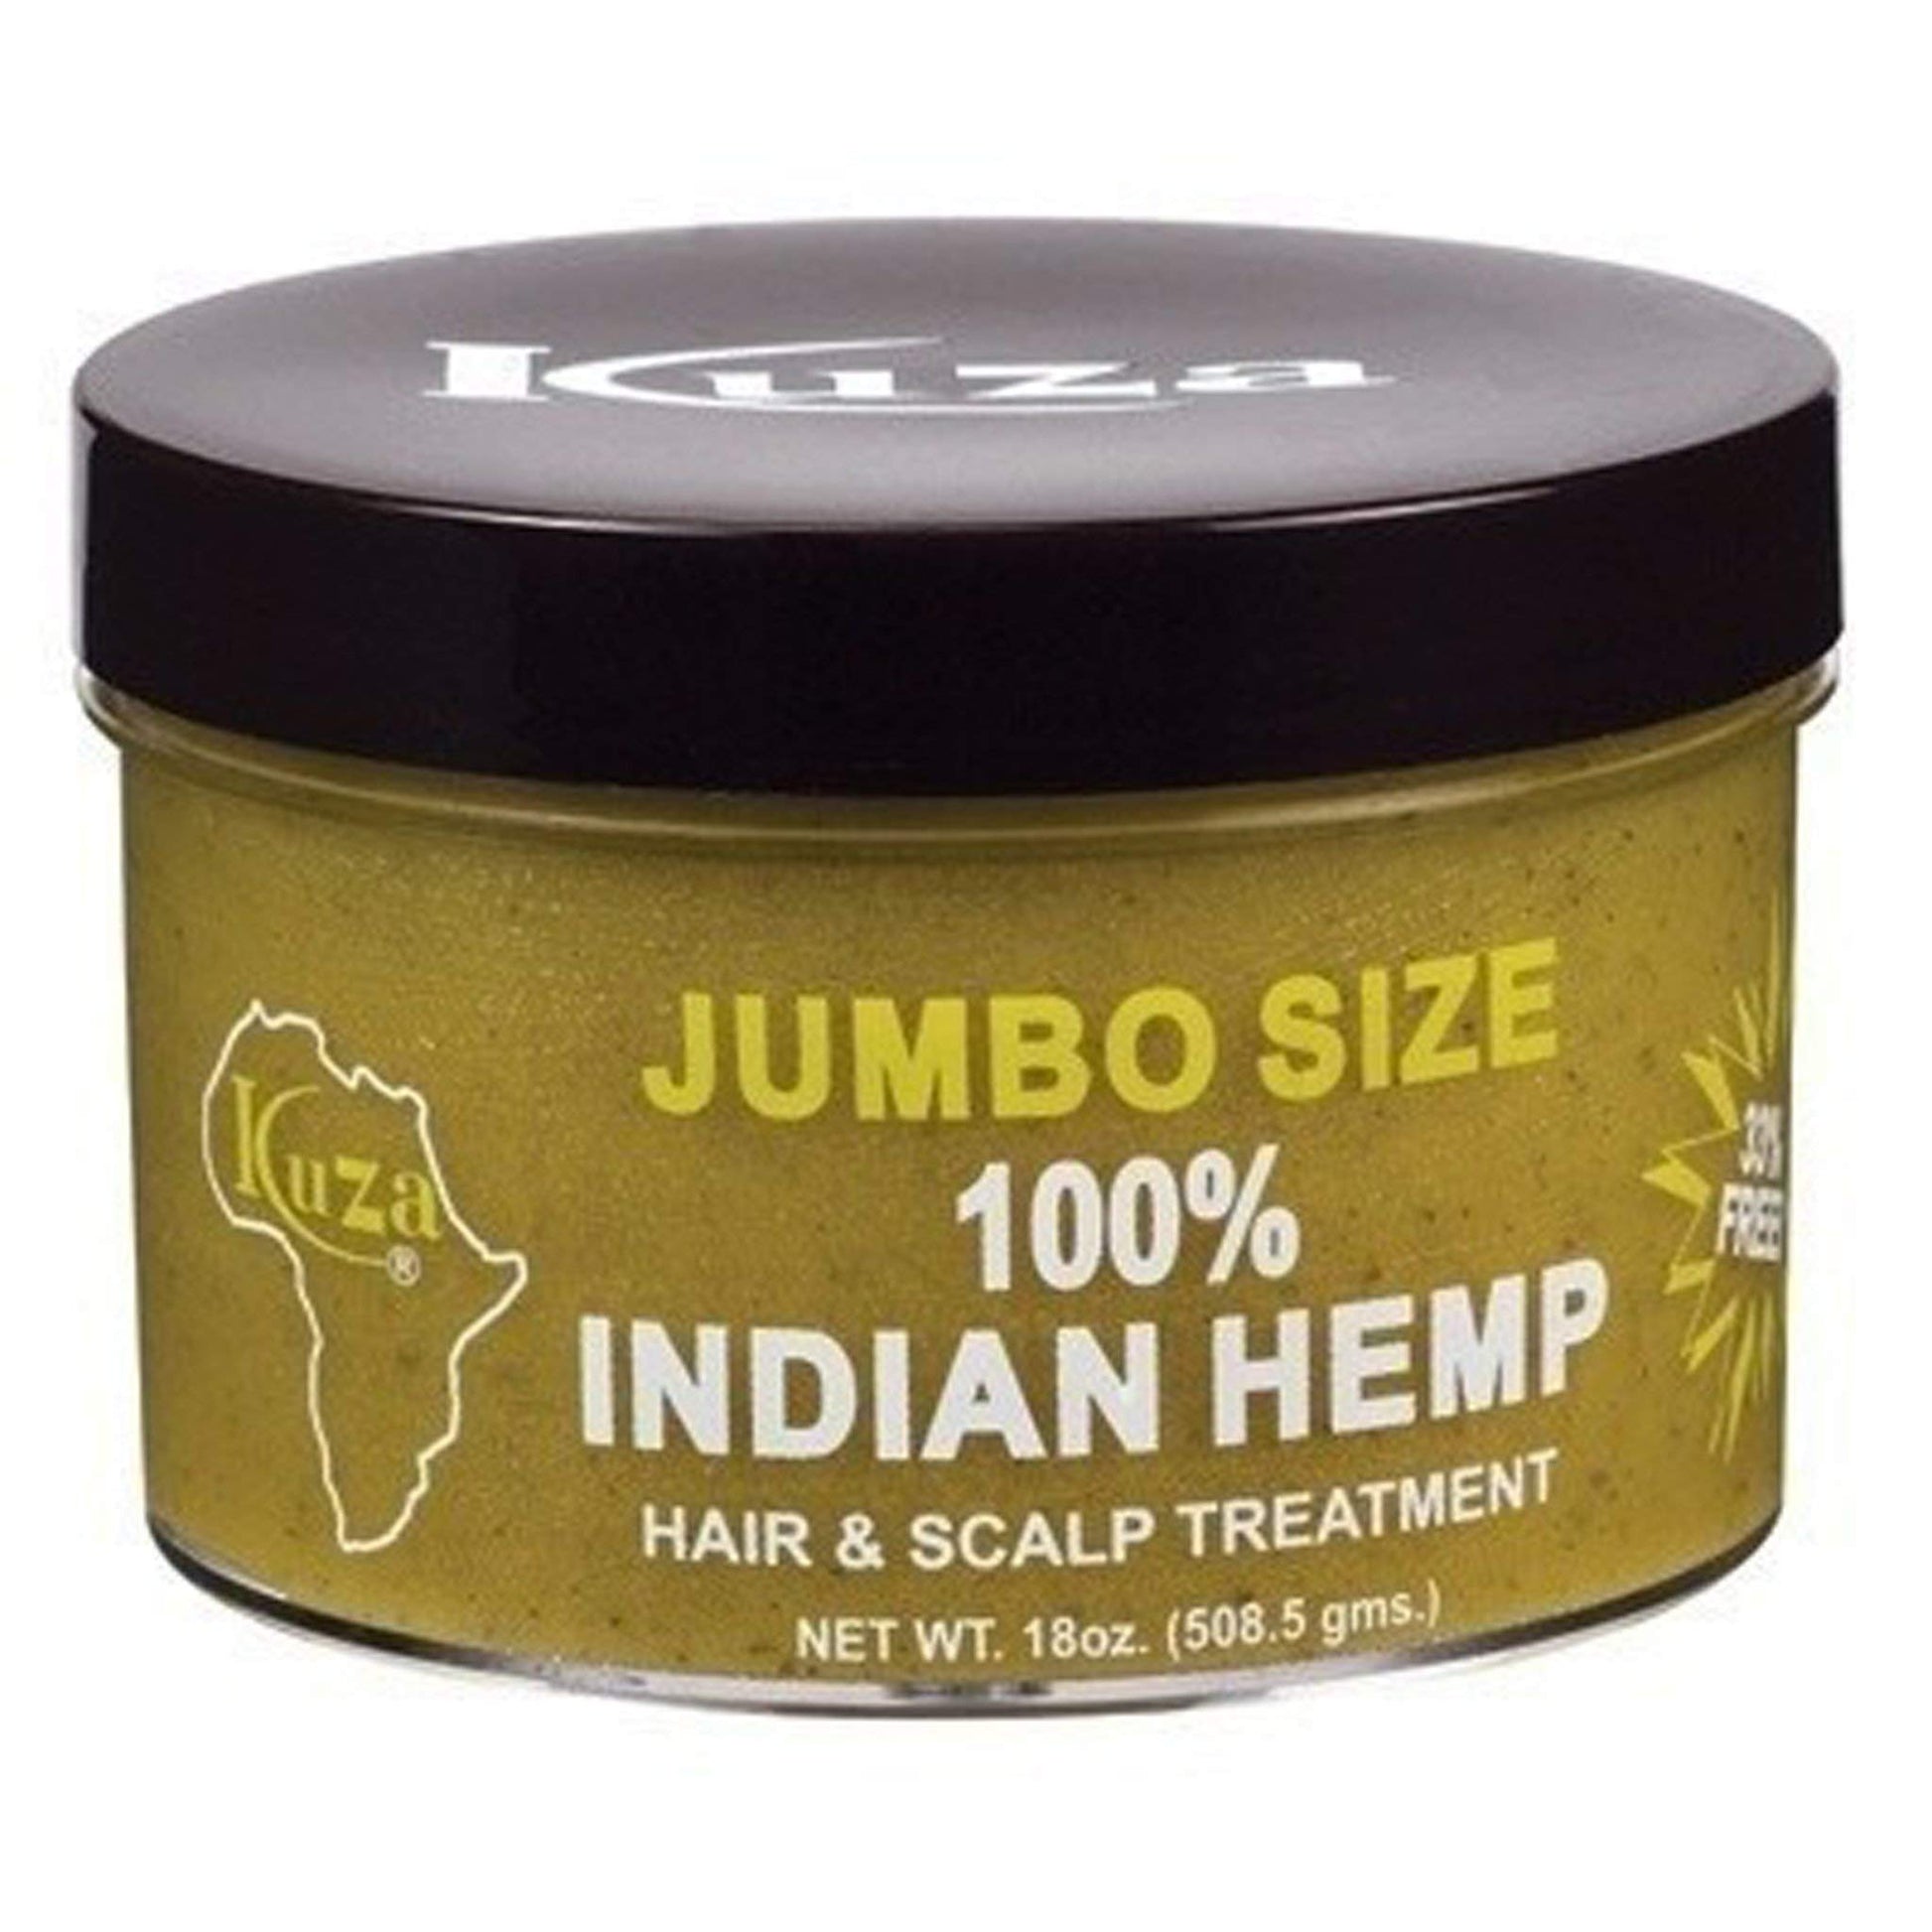 Kuza Indian Hemp Jumbo Hair & Scalp Treatment 18 oz. - Smooth, Soften & Moisturize - .